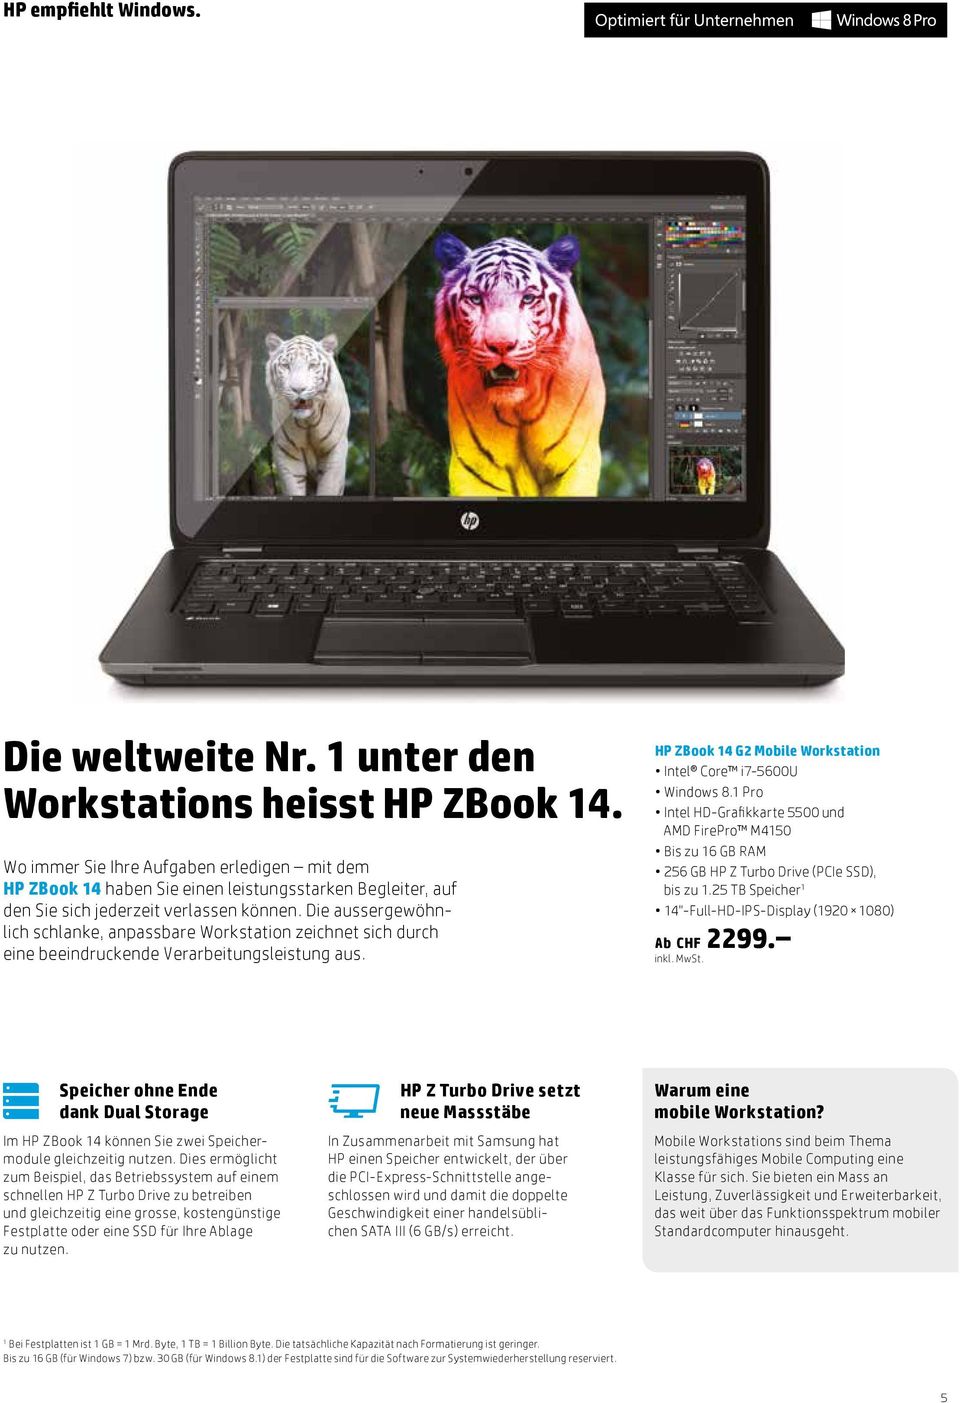 Die aussergewöhnlich schlanke, anpassbare Workstation zeichnet sich durch eine beeindruckende Verarbeitungsleistung aus. HP ZBook 14 G2 Mobile Workstation Intel Core i7-5600u Windows 8.